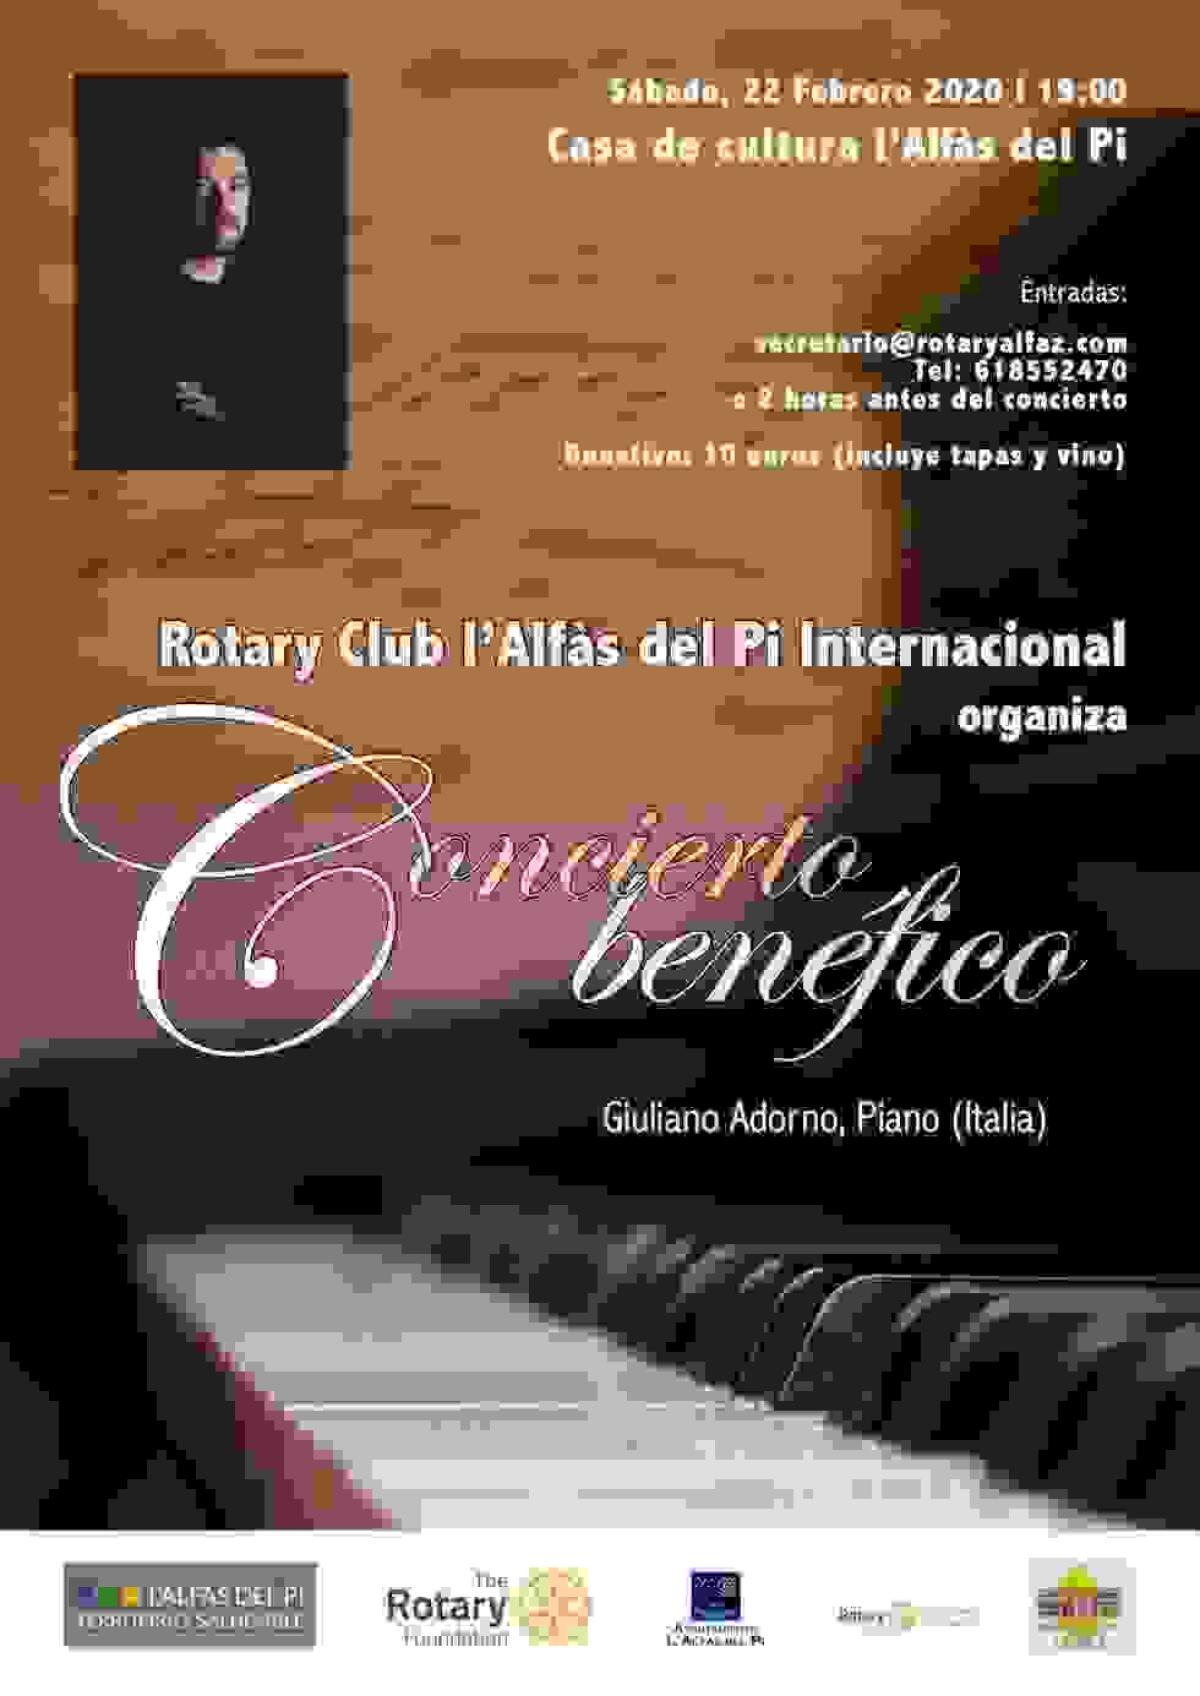 El pianista italiano Giuliano Adorno ofrecerá un concierto en la Casa de Cultura de l’Alfàs del Pi